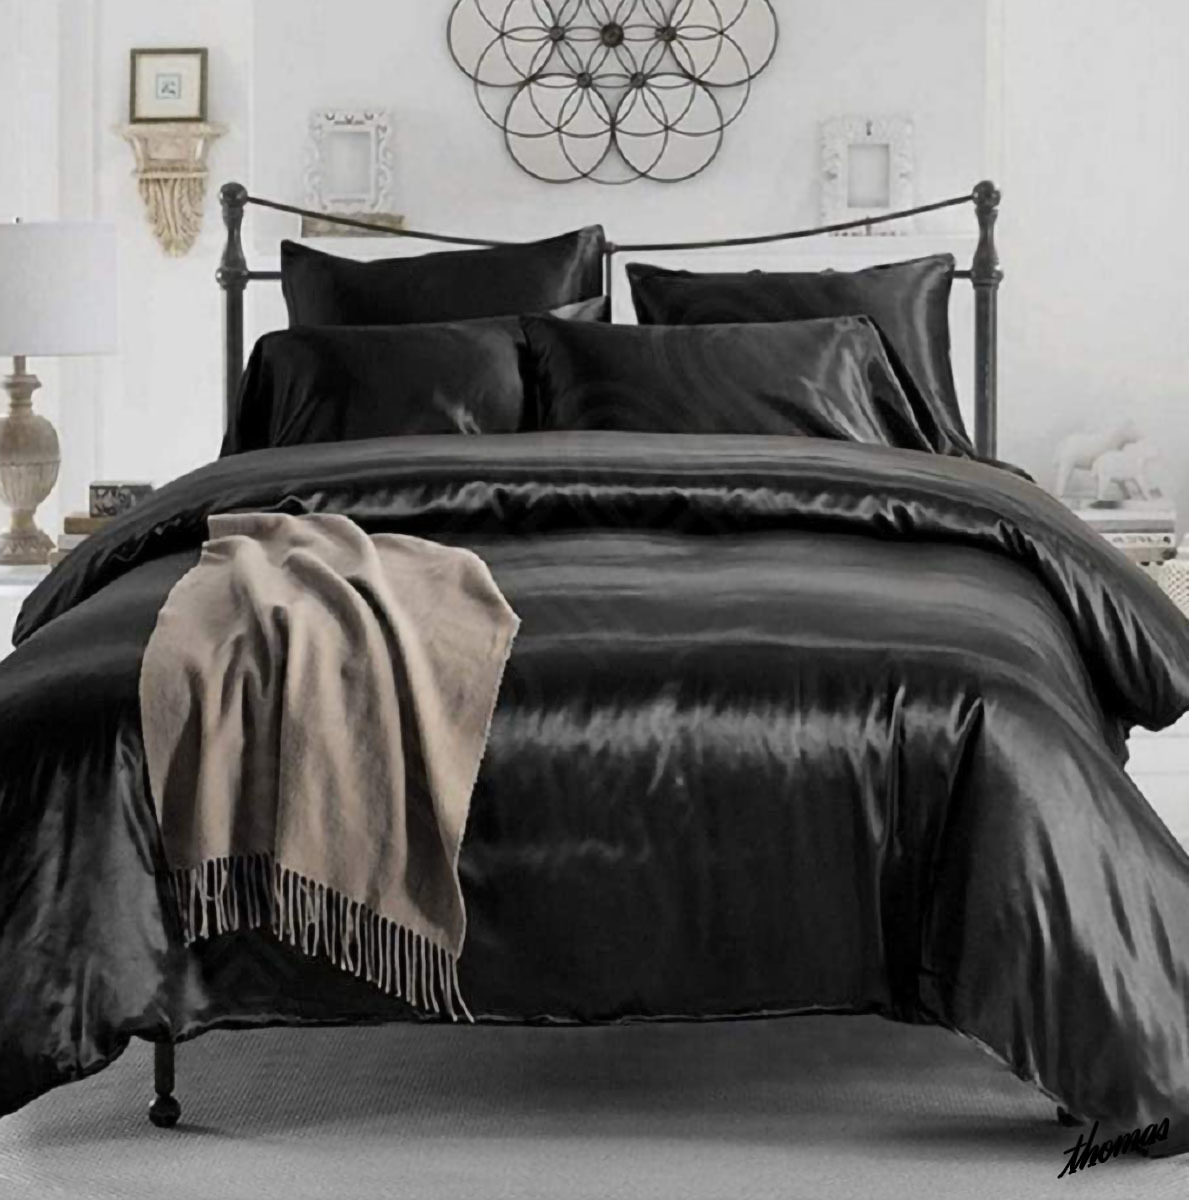 ◆高級感と安心感を与えてくれる◆ ダブルサイズ 寝具カバー 4点セット ブラック シルク風 レーヨン生地 四季通用 洗える ベッド